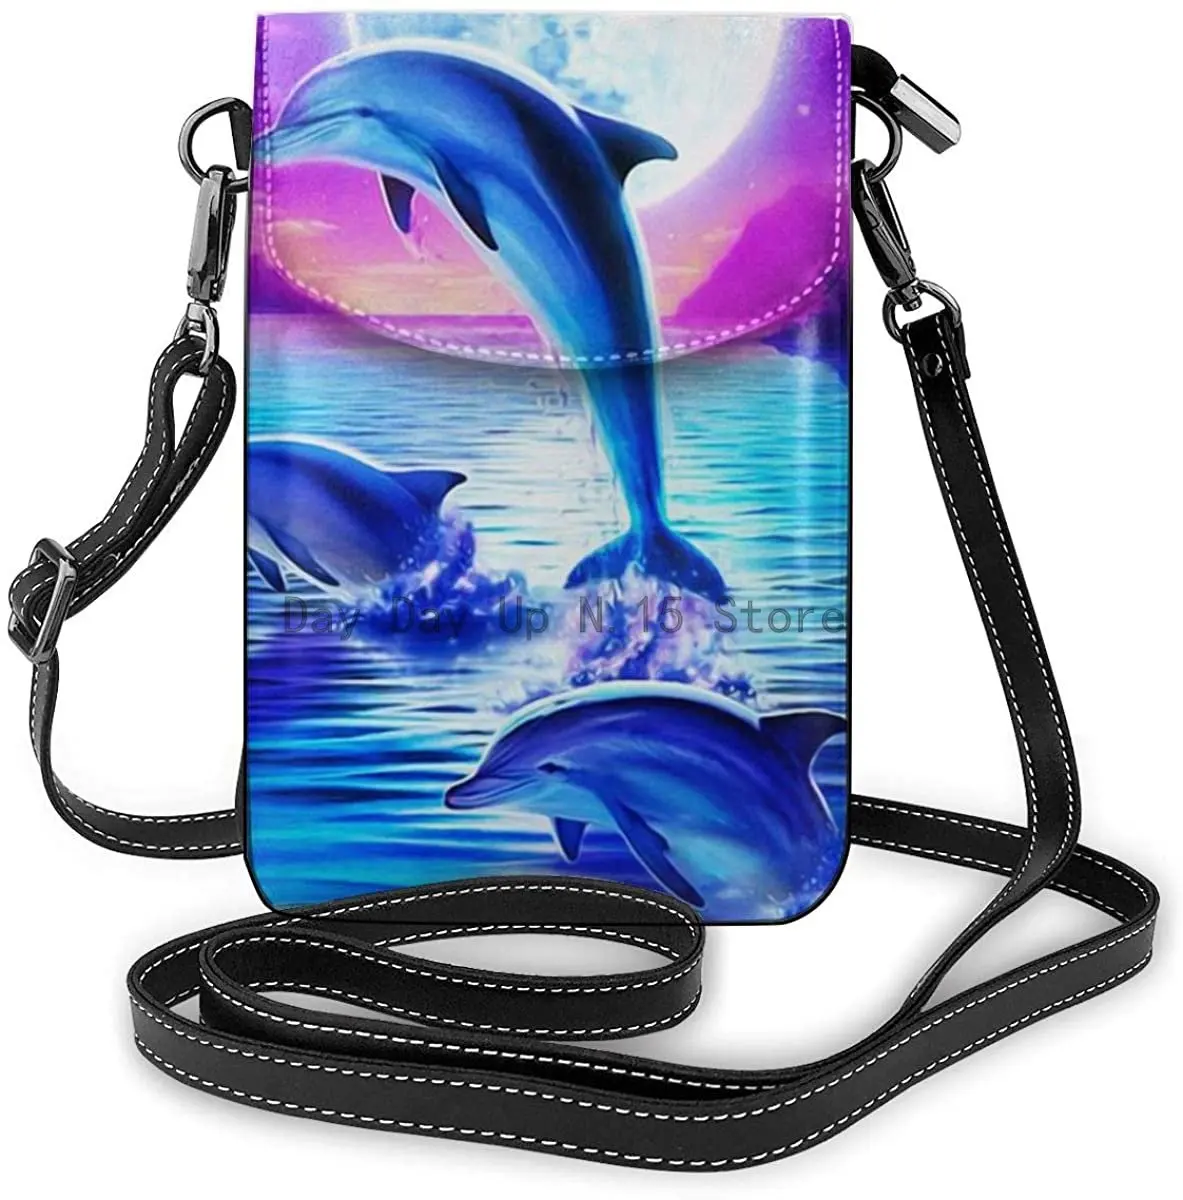 Новый Прыгающий дельфин, кожаный кошелек для телефона, Повседневная сумка для мобильного телефона, кошелек, сумка через плечо, Держатель для ключей